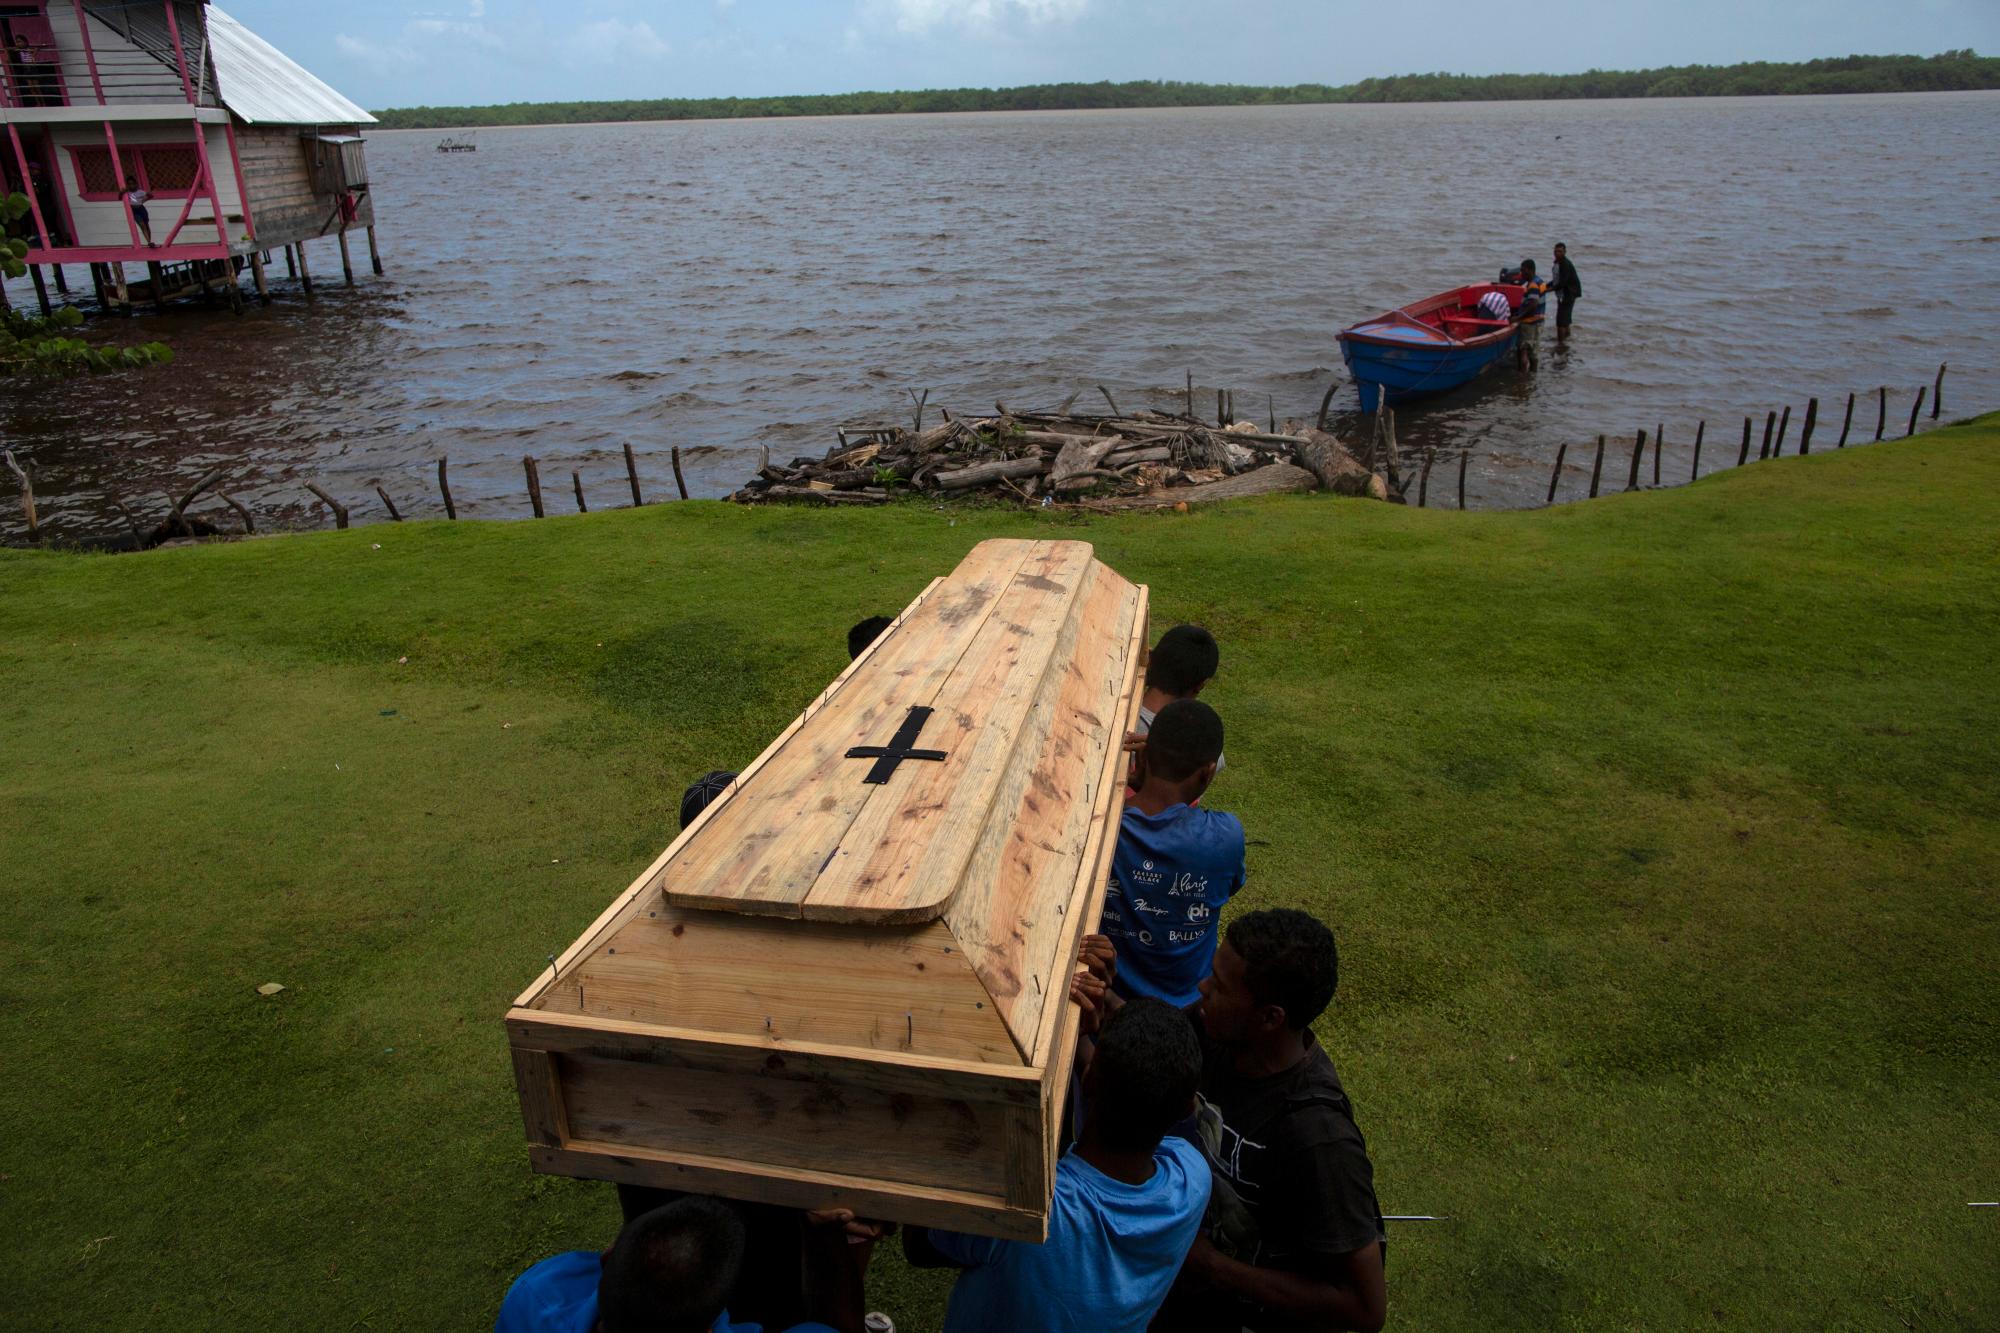 Familiares y amigos llevan el ataúd que contiene los restos del buzo Miskito Oscar Salomon Charly, de 31 años, para ser transportados en un bote a un cementerio cercano, en Cabo Gracias a Dios, Nicaragua. Charly murió en Honduras luego de sufrir un grave caso de enfermedad por descompresión.